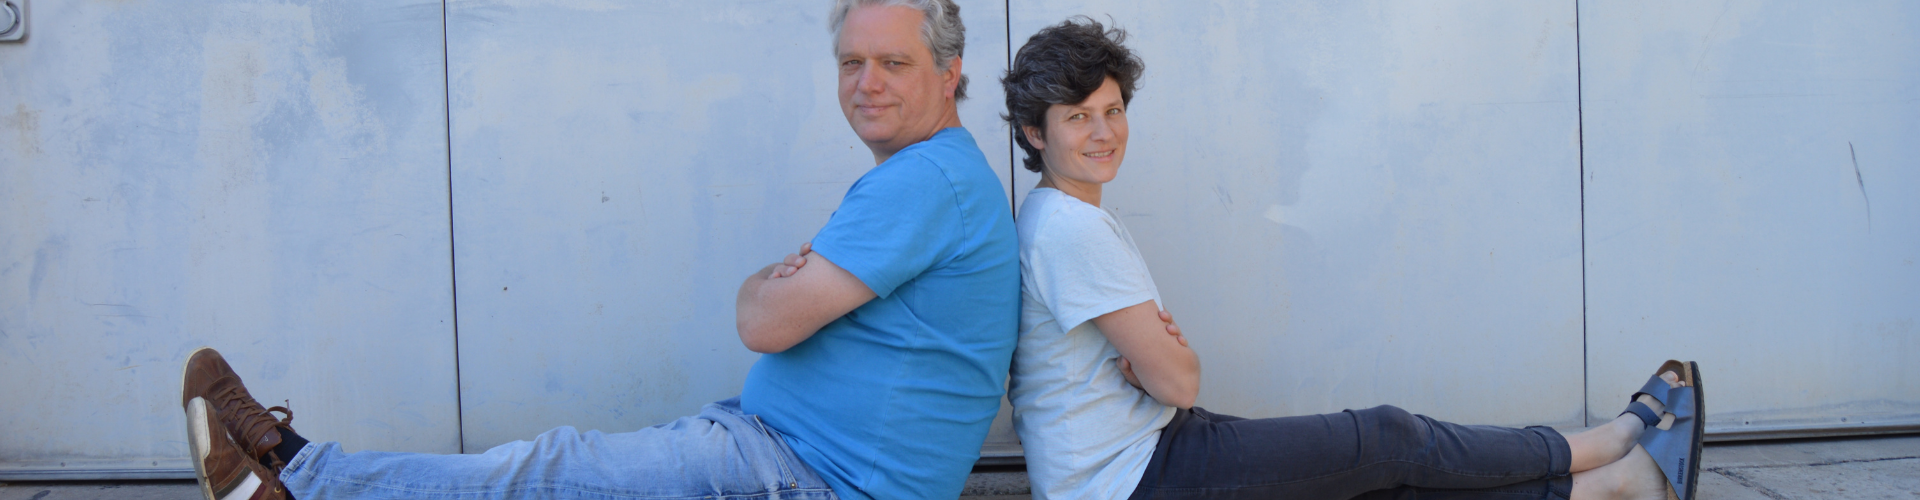 Forscherfreunde - Sven und Annette